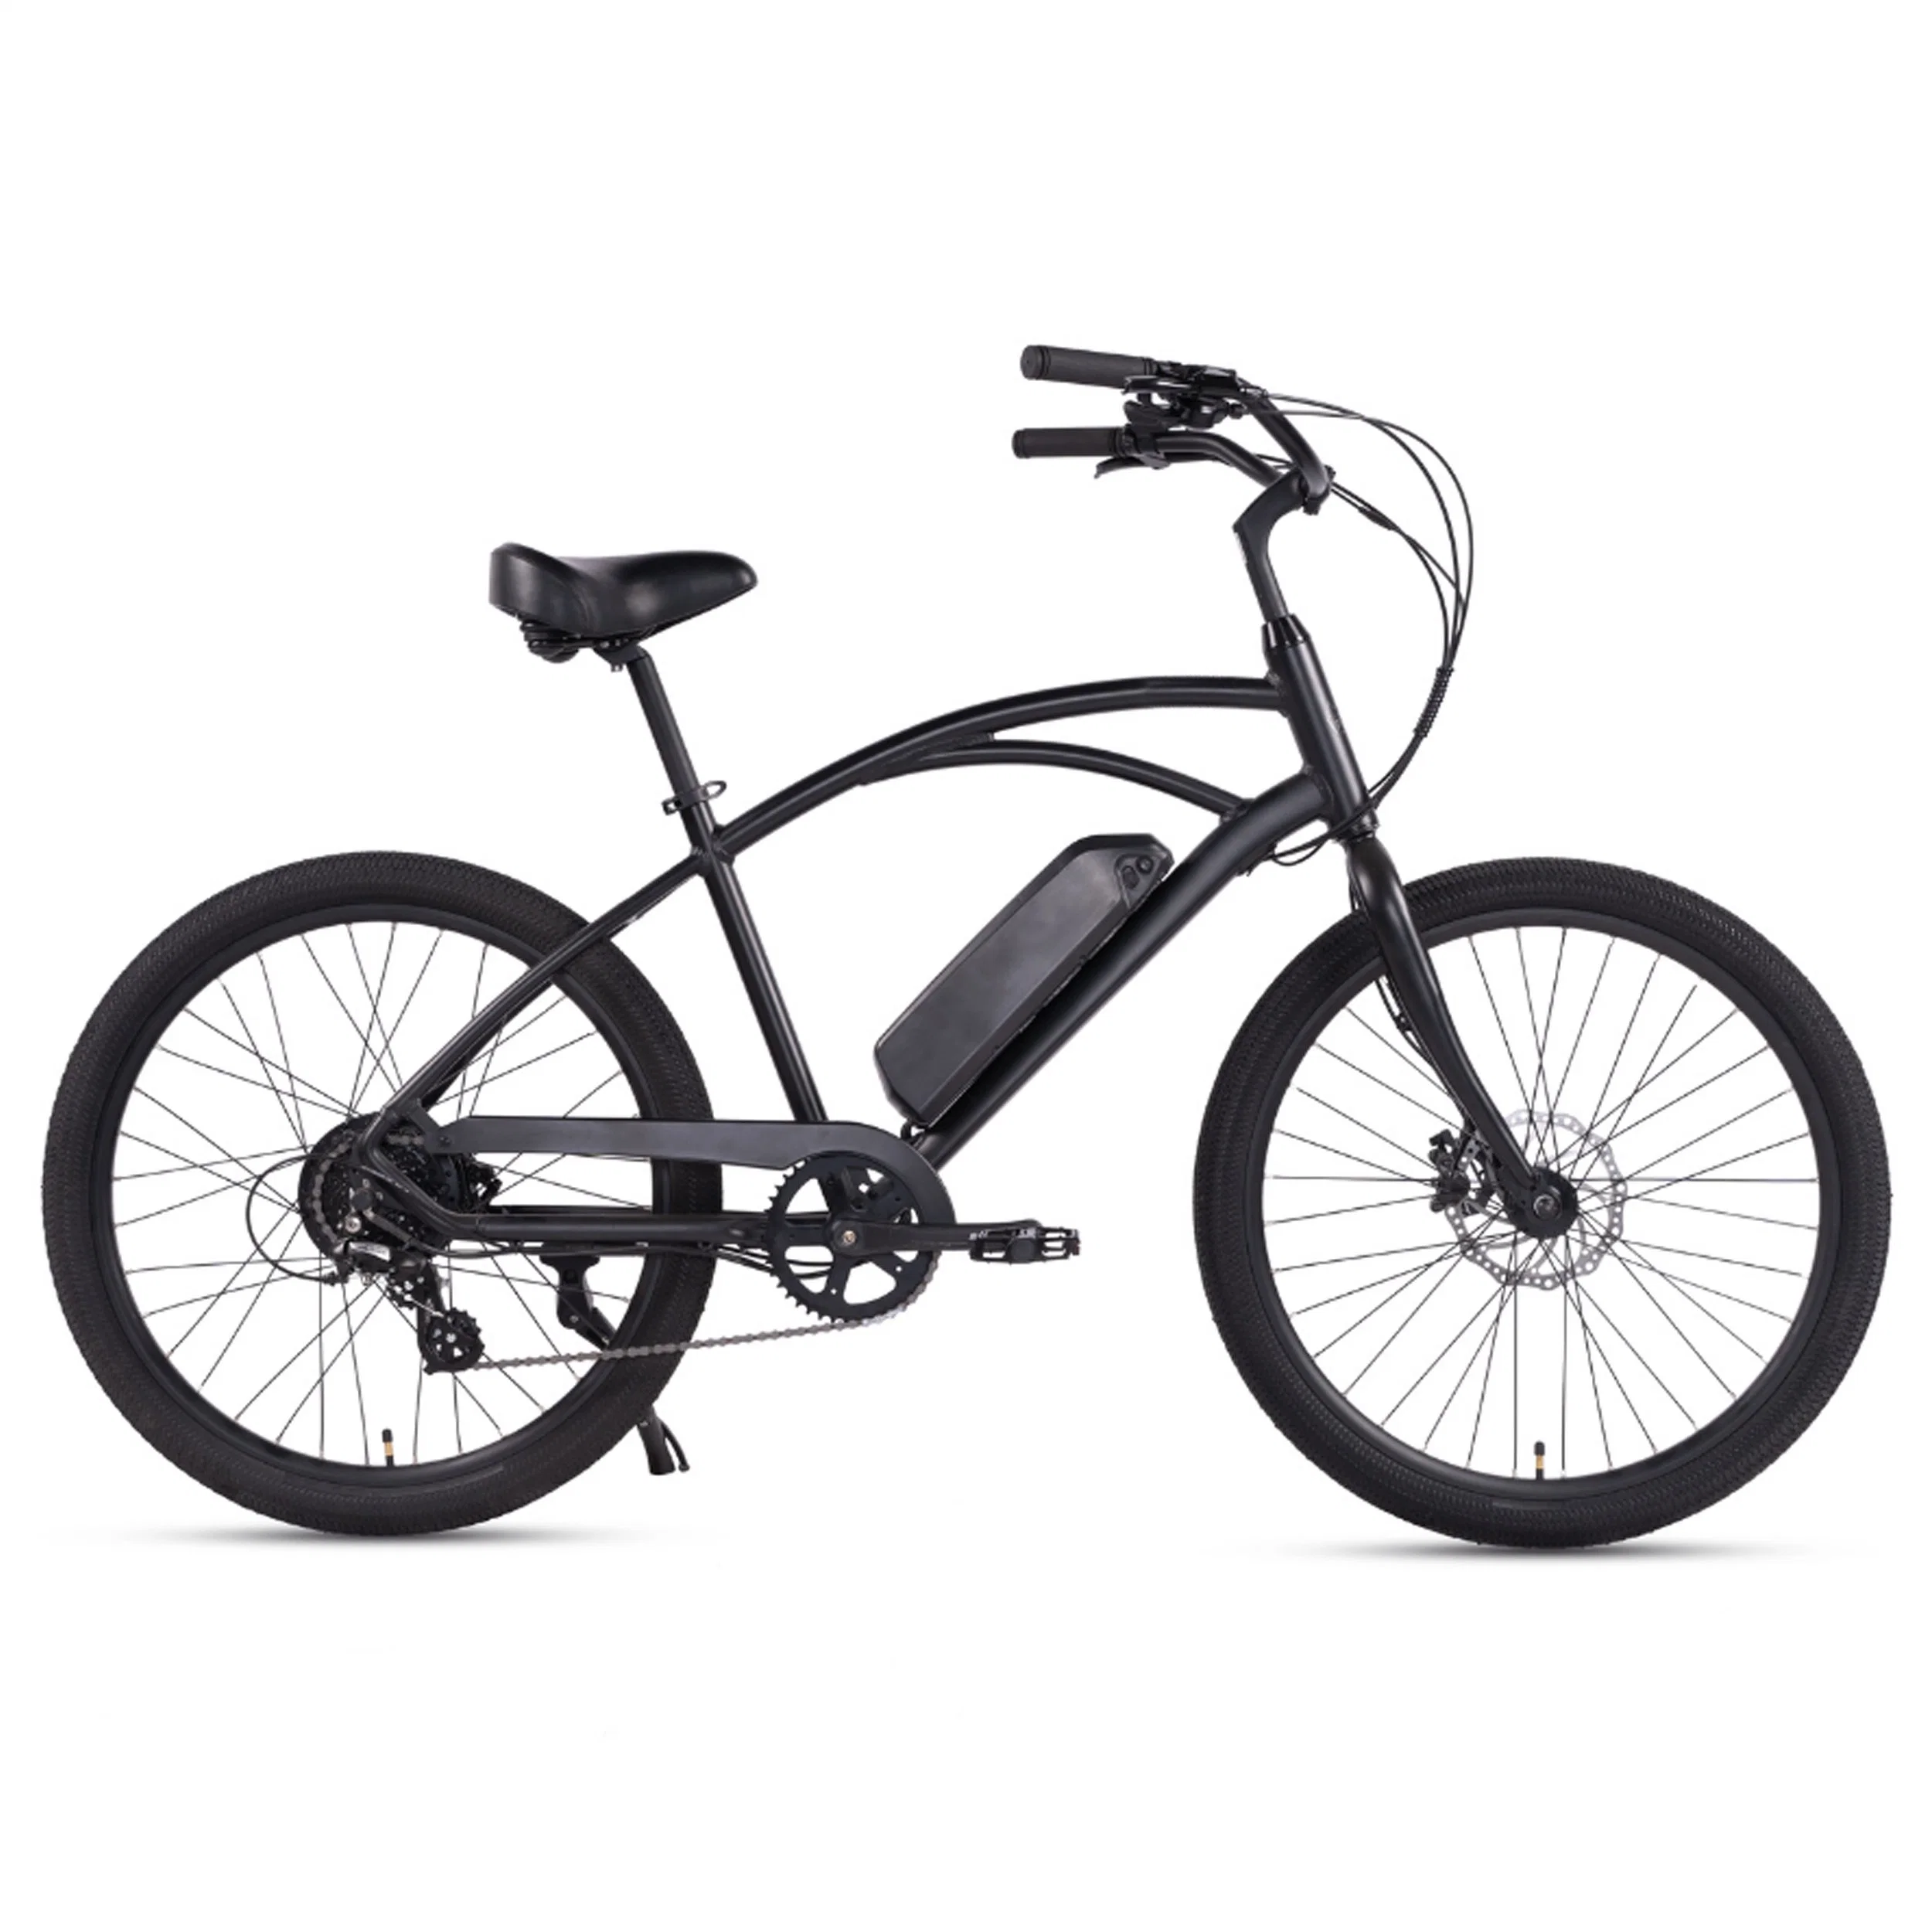 وصول جديد 36 فولت E-biques سعر رخيص كامل تعليق الجبال الترابية دراجة كهربائية E دراجة هوائية